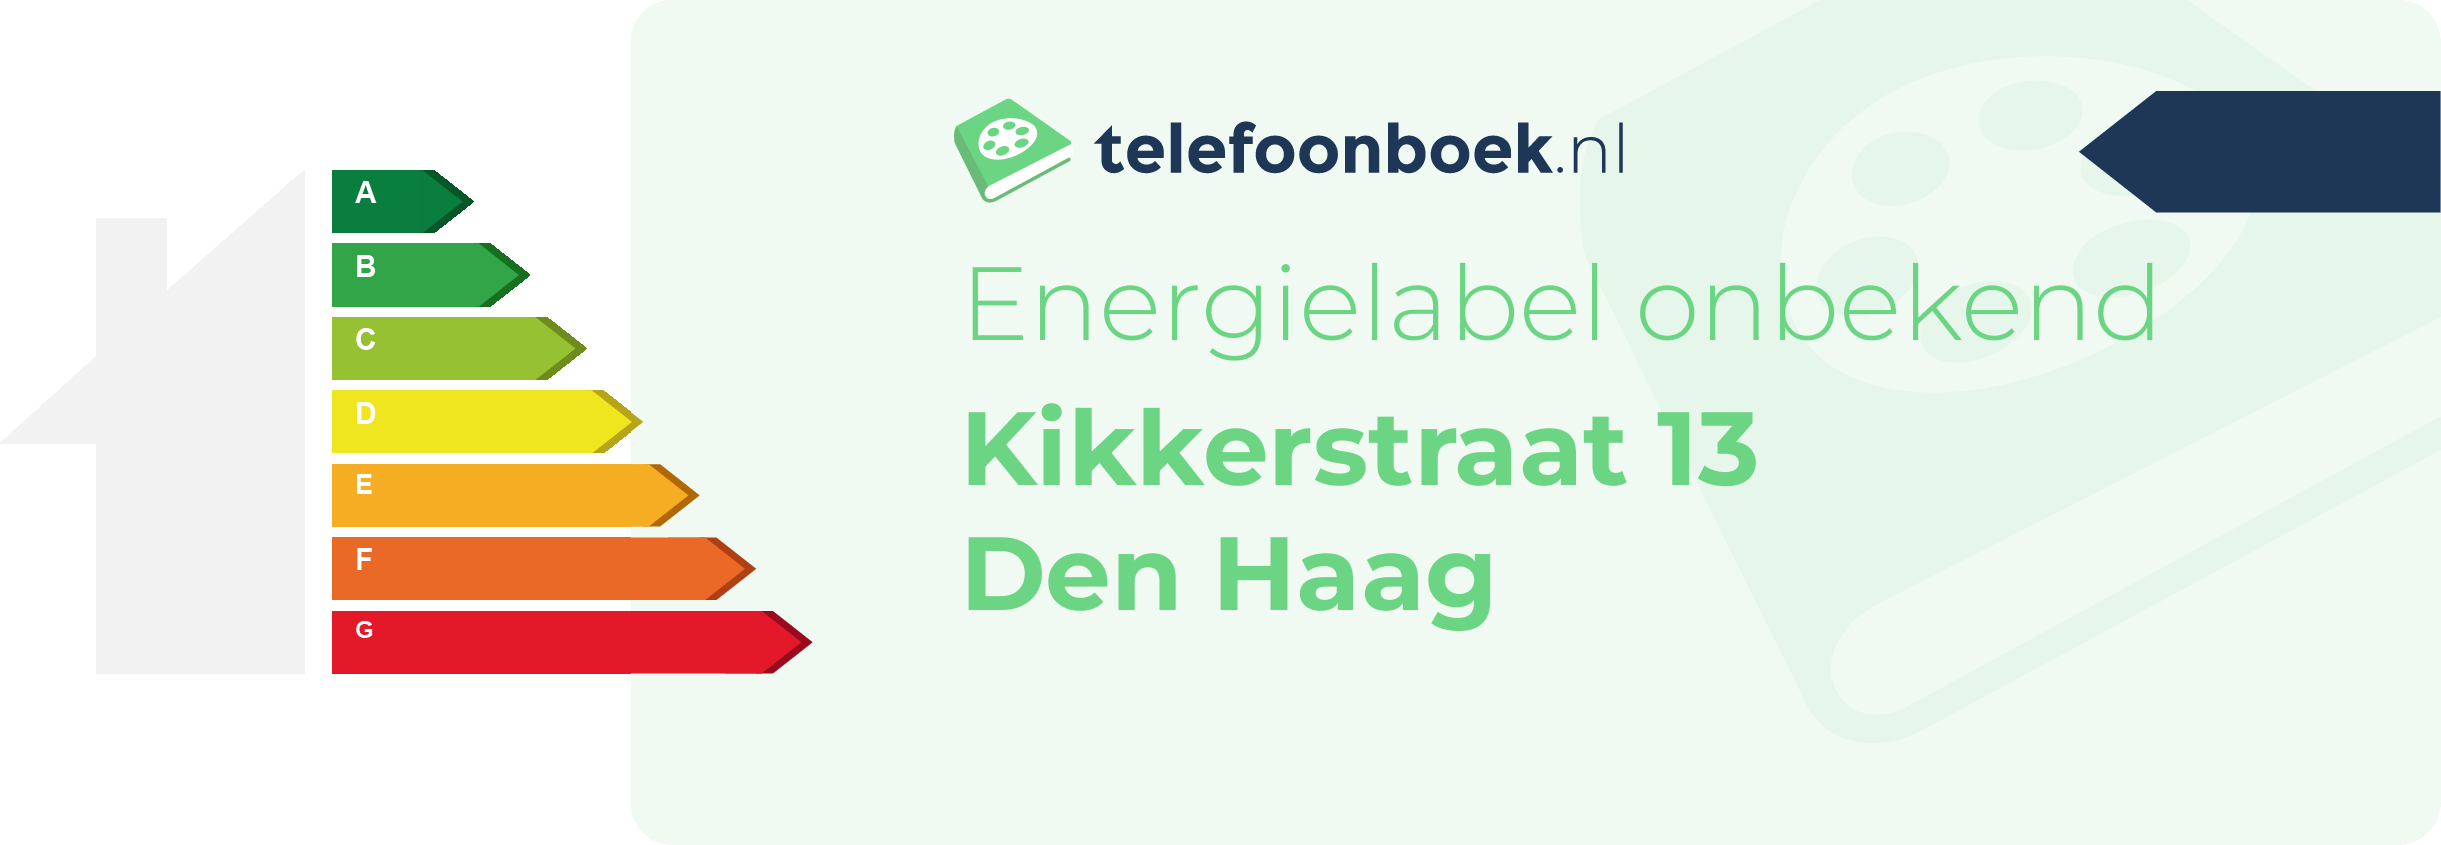 Energielabel Kikkerstraat 13 Den Haag